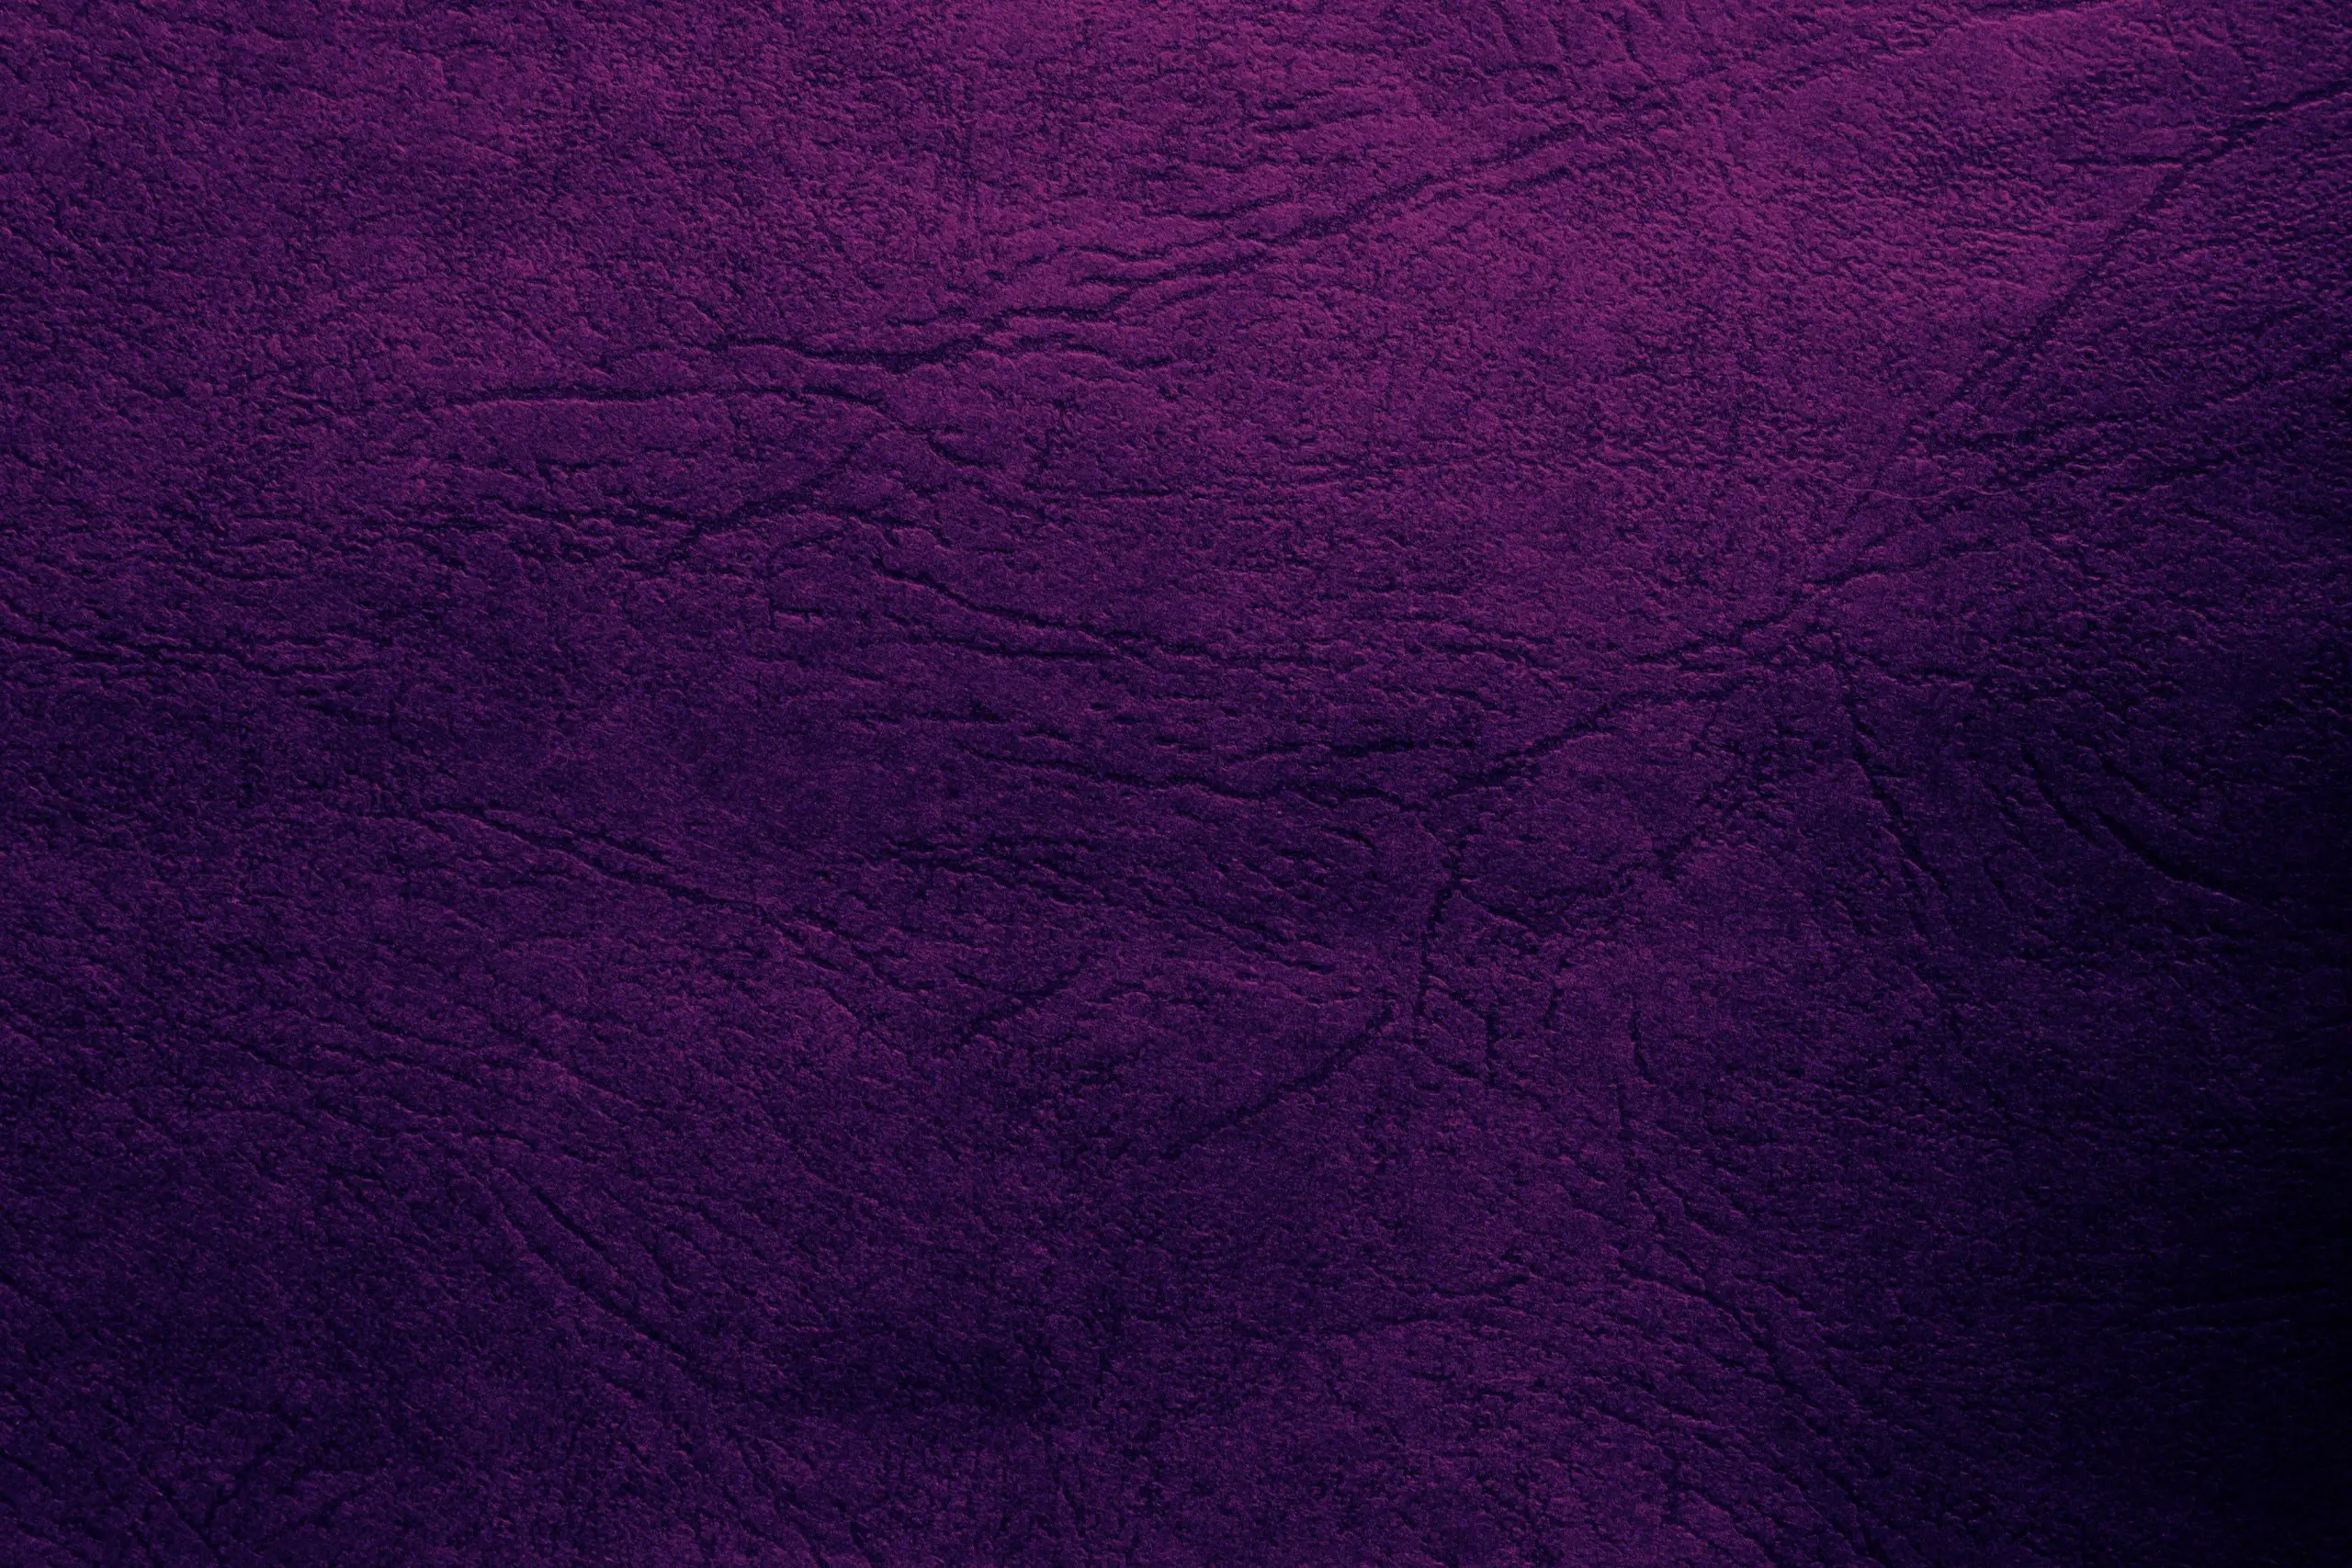 Psychology Of Colors - Purple